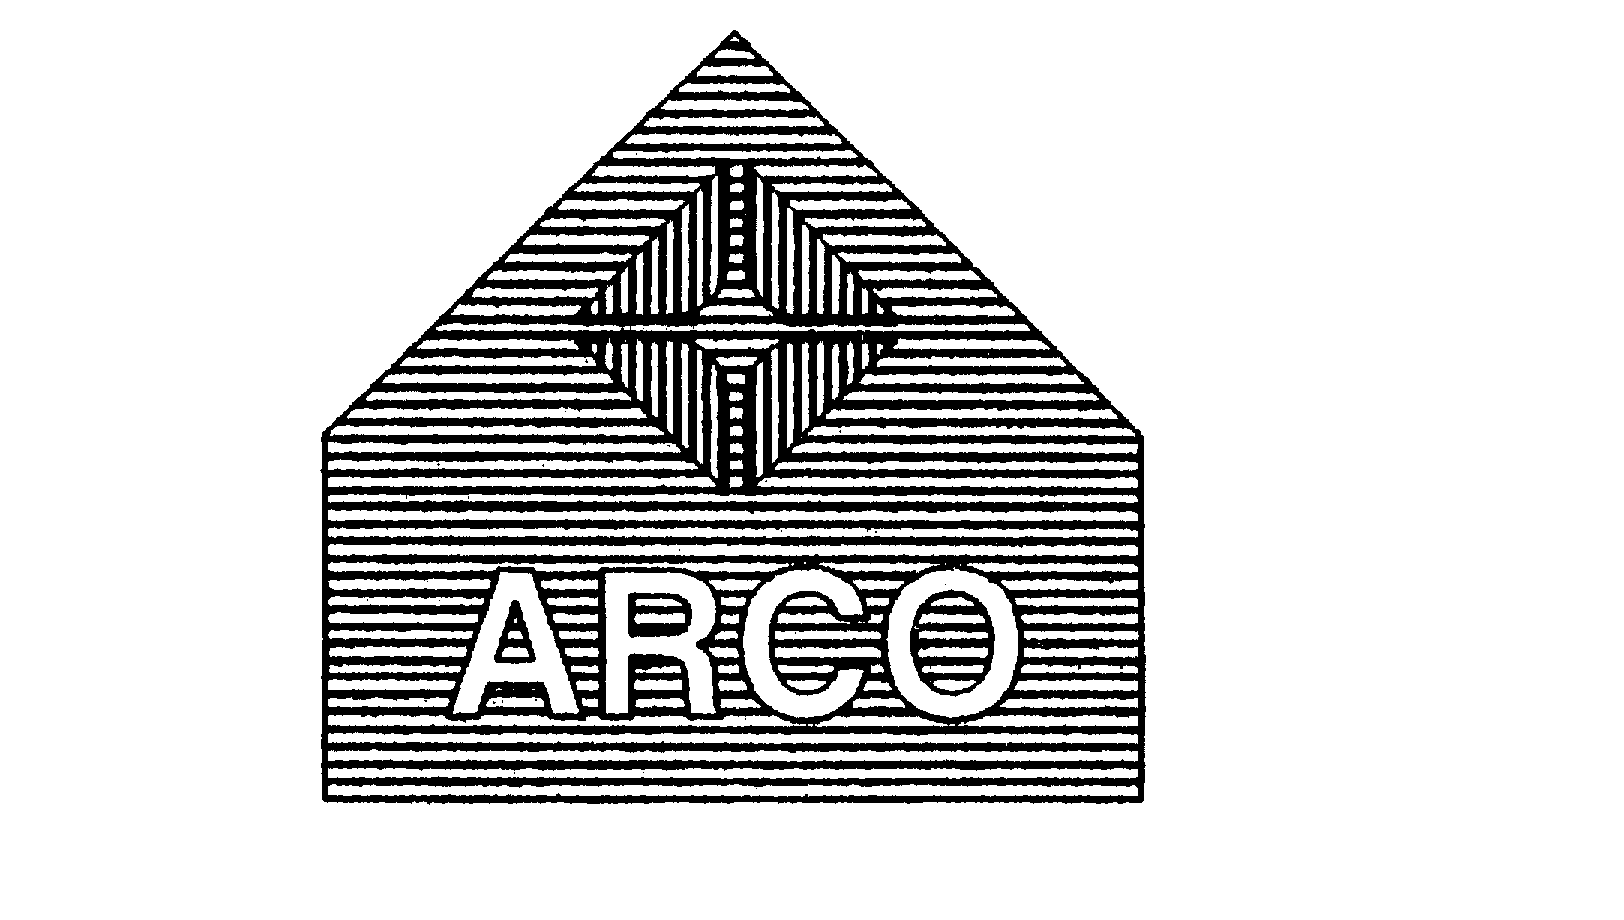 Trademark Logo ARCO